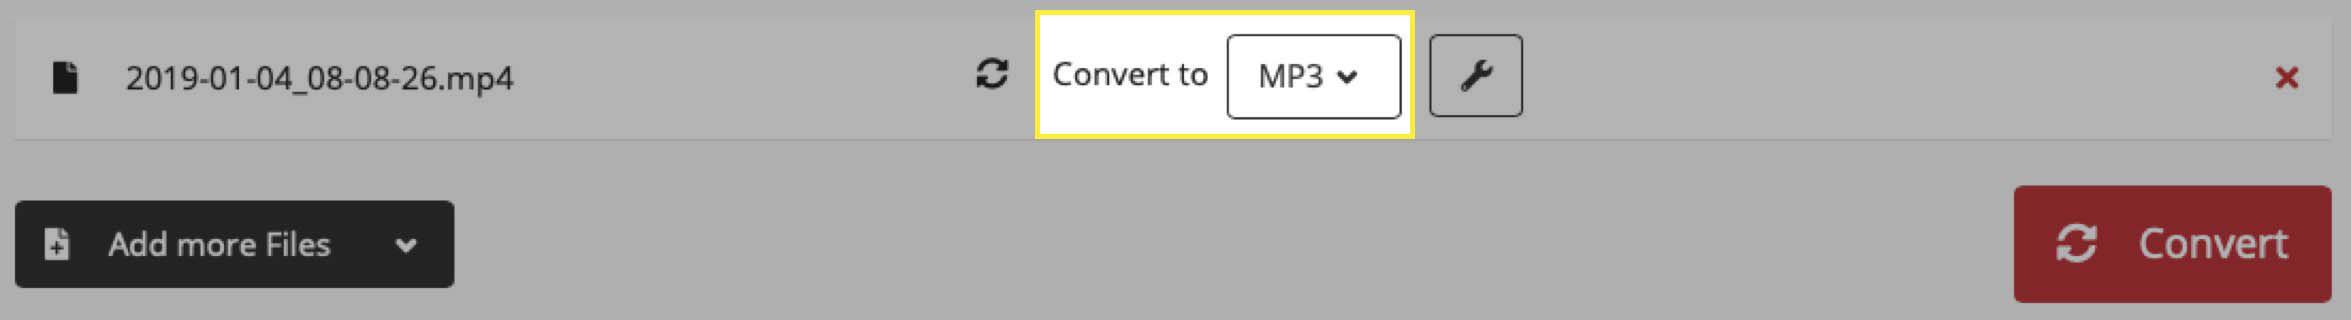 Bevestig het MP3-bestandsformaat op de site van Cloud Convert.